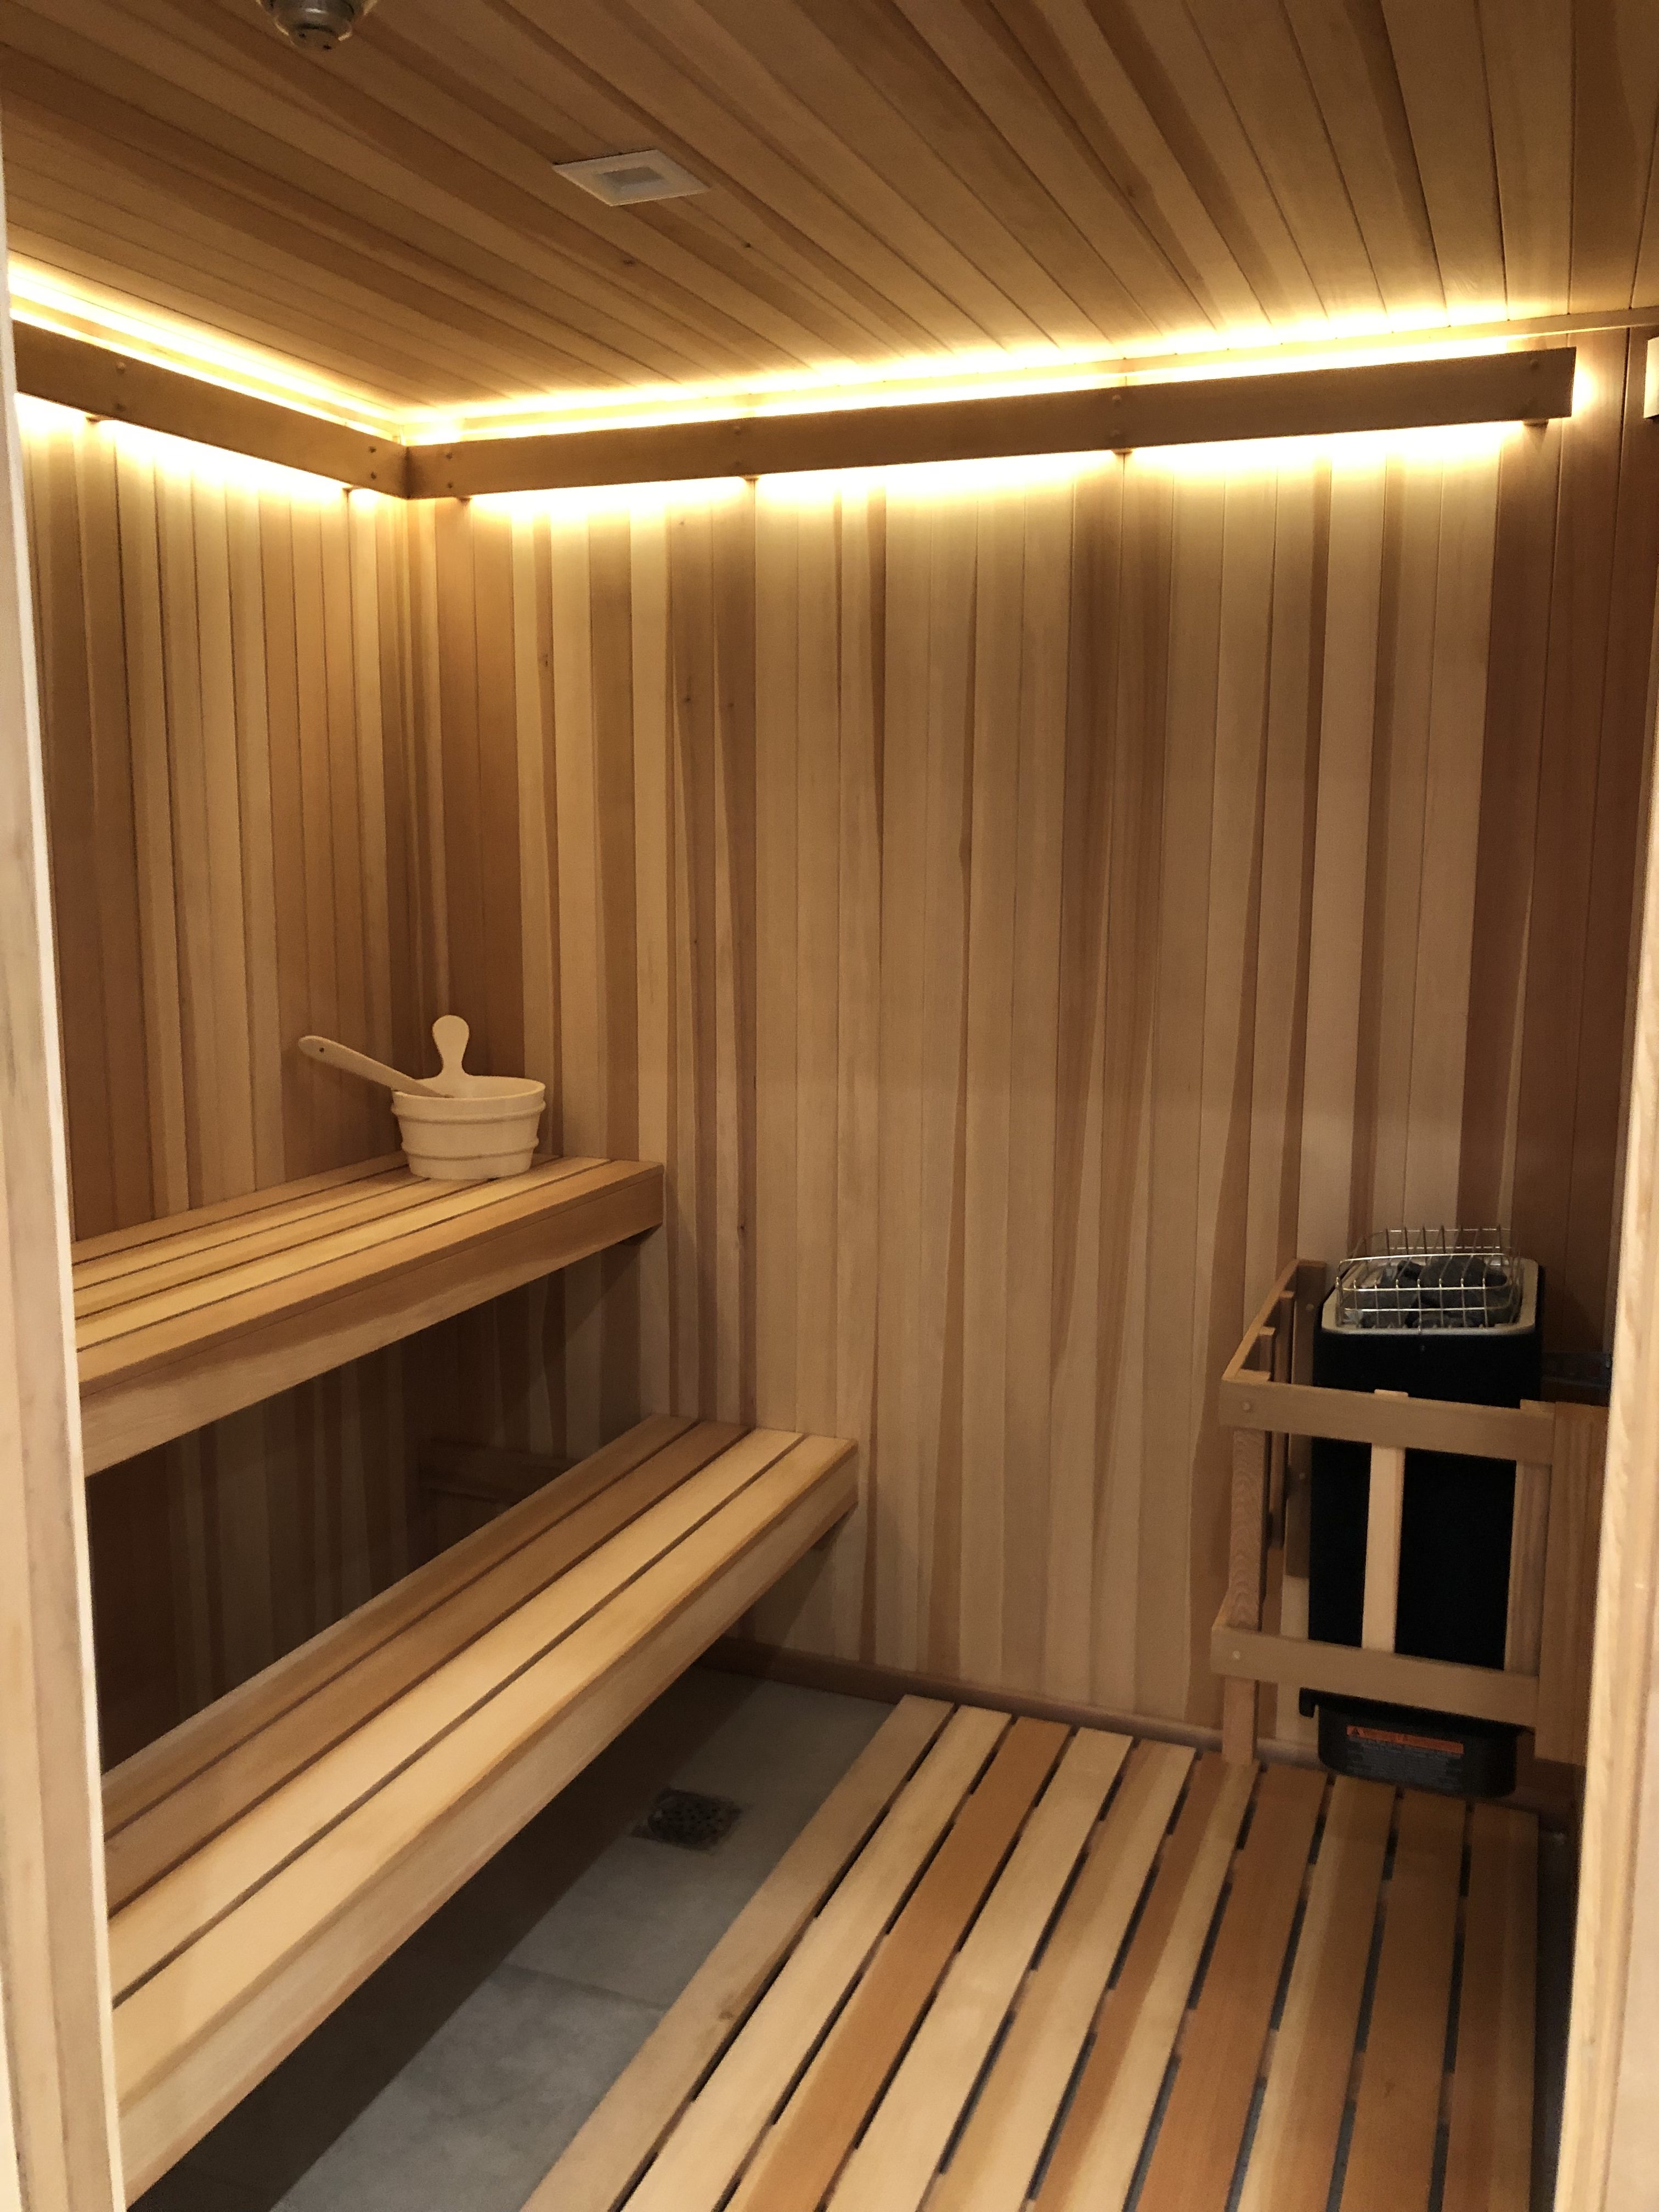 Kết quả hình ảnh cho luxury sauna